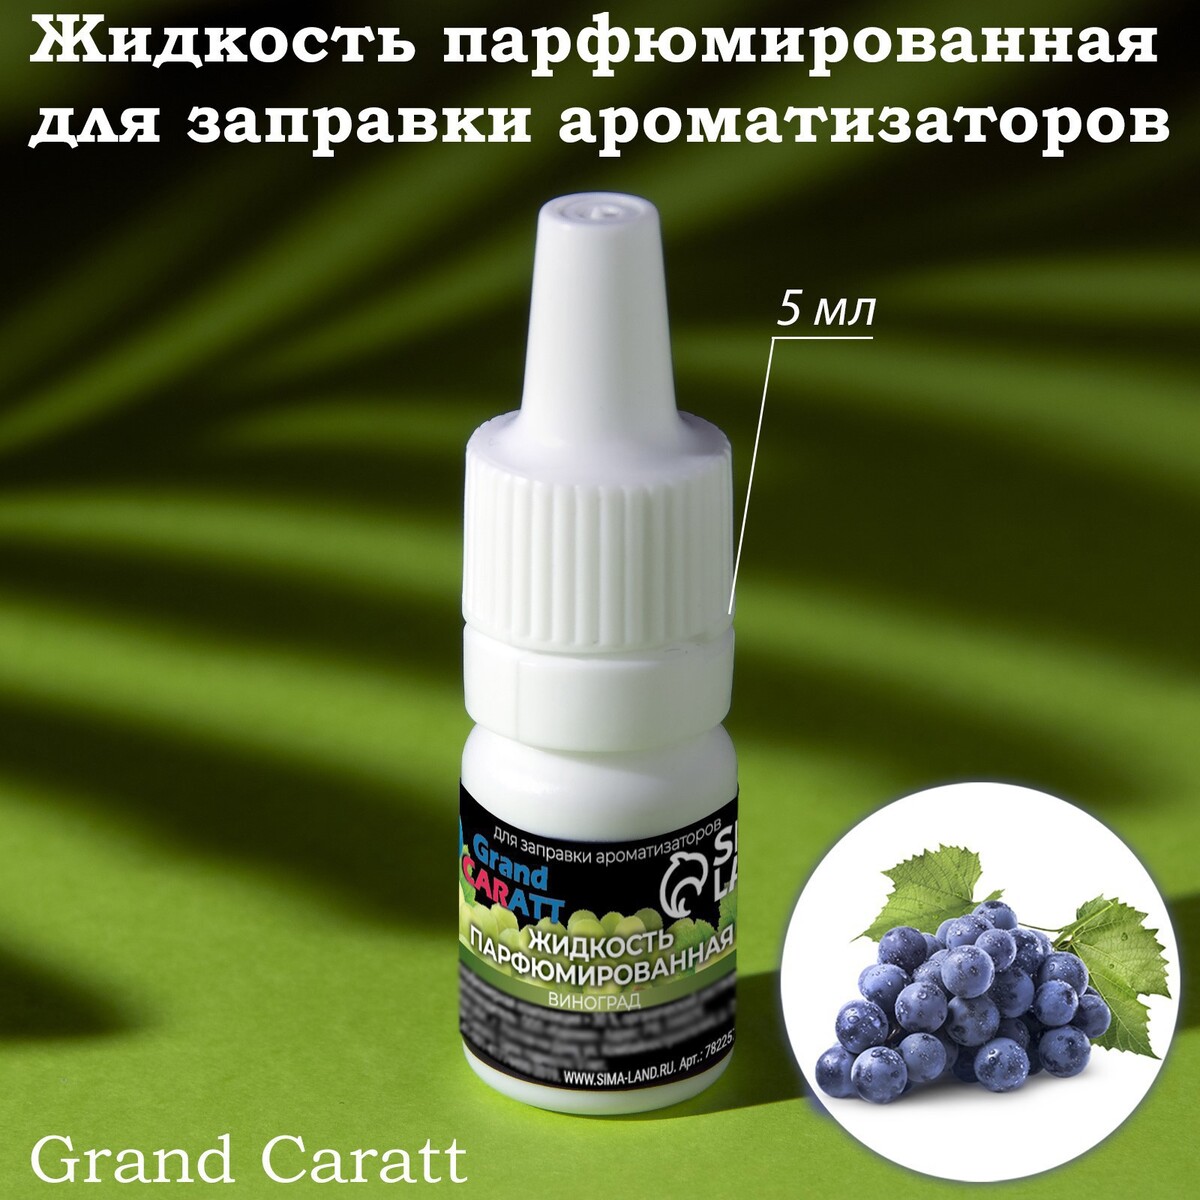 Жидкость парфюмированная grand caratt, для заправки ароматизаторов, виноград, 5 мл жидкость парфюмированная grand caratt для заправки ароматизаторов виноград 5 мл